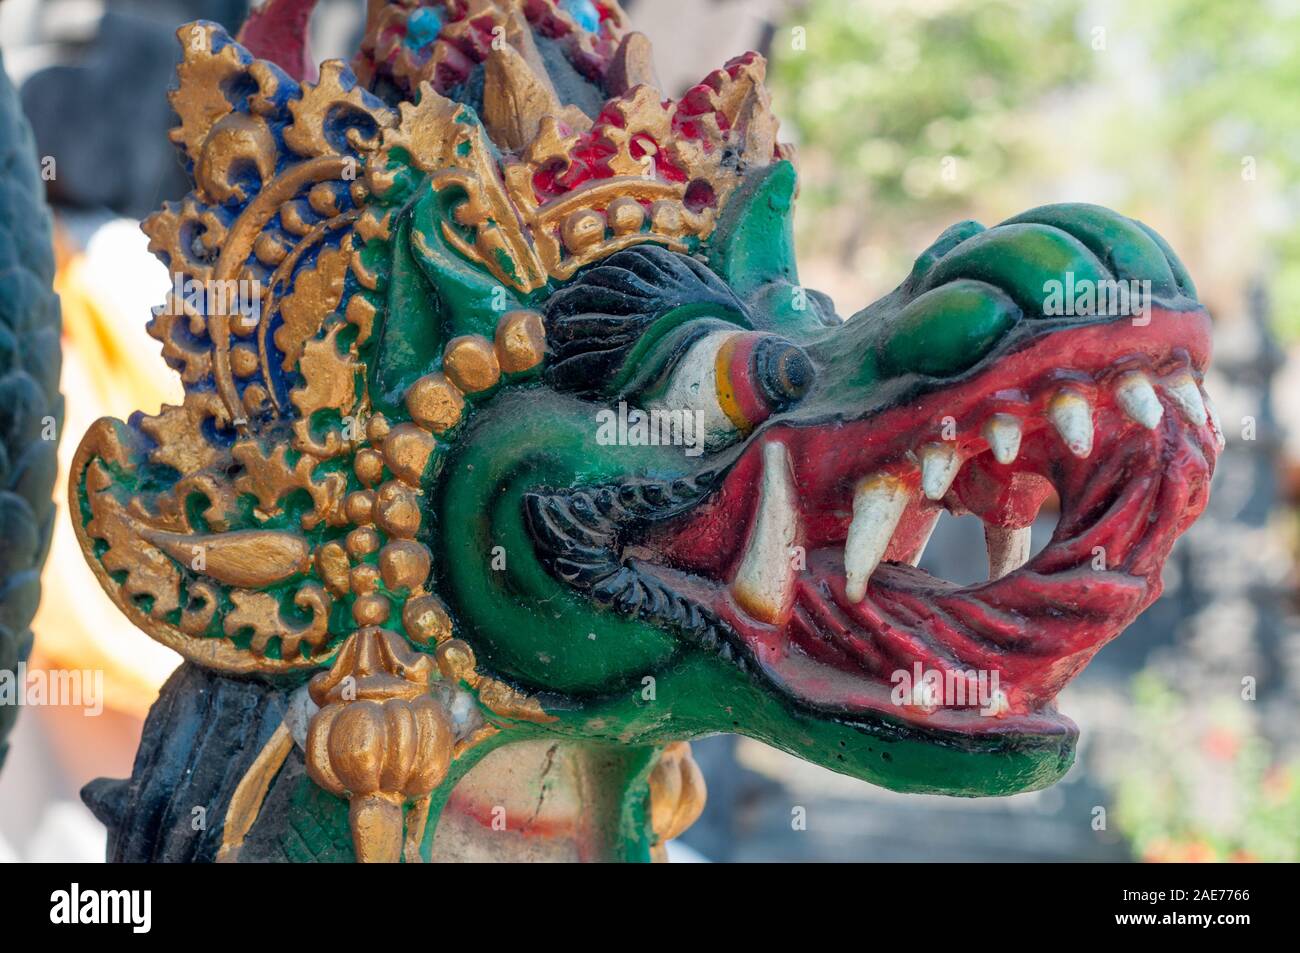 Dragon carving, pura puri yowana segara bulakan, Pantai Bulakan, Bali, Indonesia Foto Stock